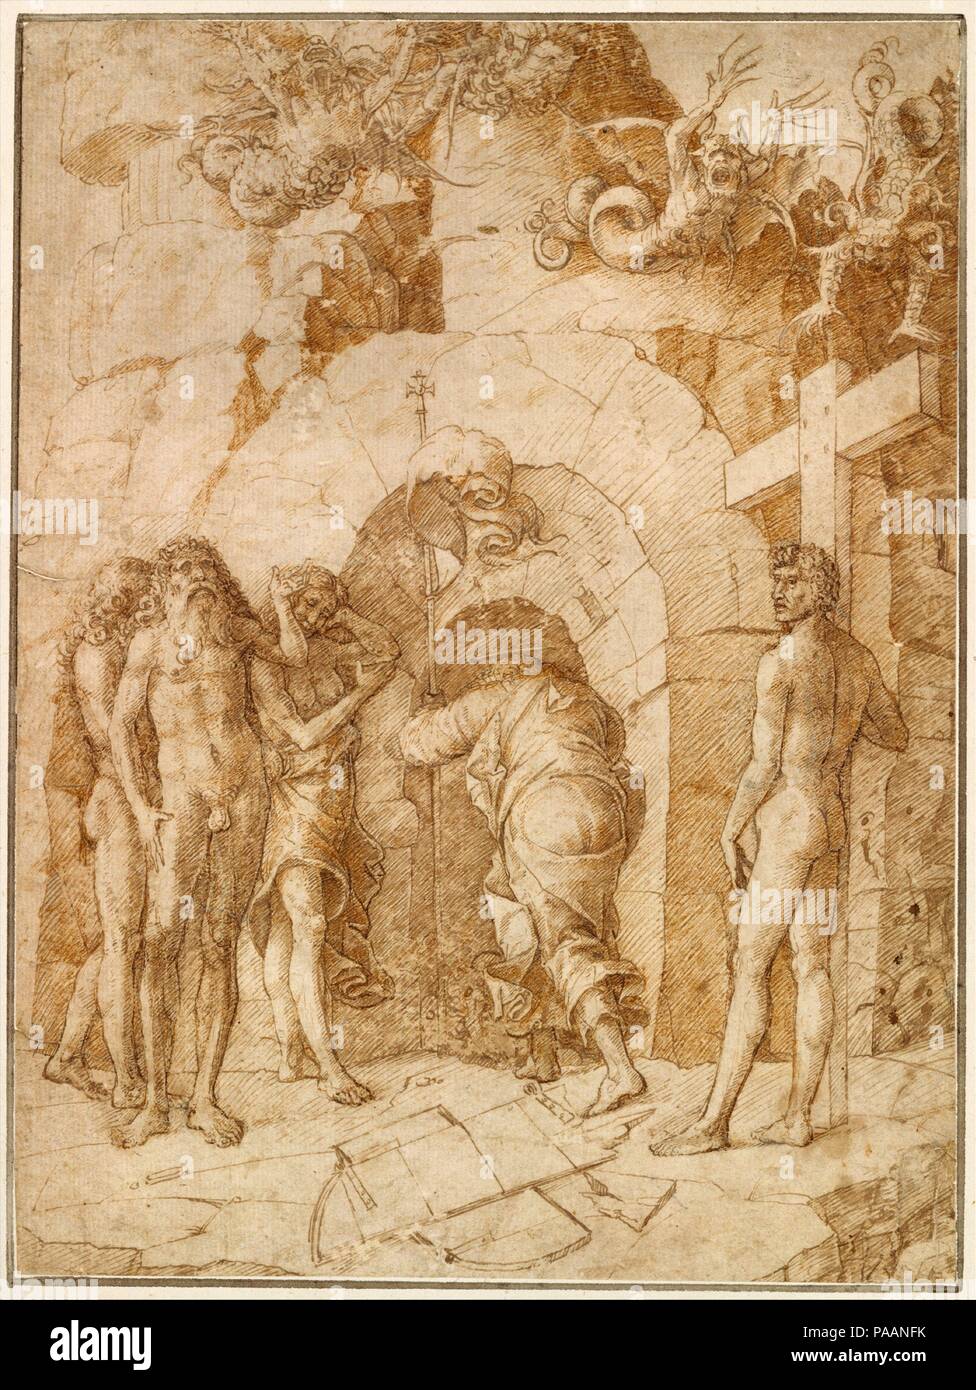 La descente dans les limbes. Artiste : Cercle d'Andrea Mantegna (Italien, Isola di Carturo 1430/31-1506 Mantoue). Dimensions : 10 9/16 x 7 7/8 in. (26,9 x 20 cm). Date : milieu du xve siècle. Dans cette composition, le Christ est représenté par l'arrière alors qu'il entame sa descente dans les limbes, la zone avant l'entrée de l'enfer, où il s'est rendu après sa mort et avant sa résurrection. L'histoire n'est pas trouvée dans le Nouveau Testament, mais faisait partie des premiers enseignements de l'Église et au 15ème siècle était une foi chrétienne. Ces travaux sont étroitement liés à un groupe de dessins, gravures, Banque D'Images